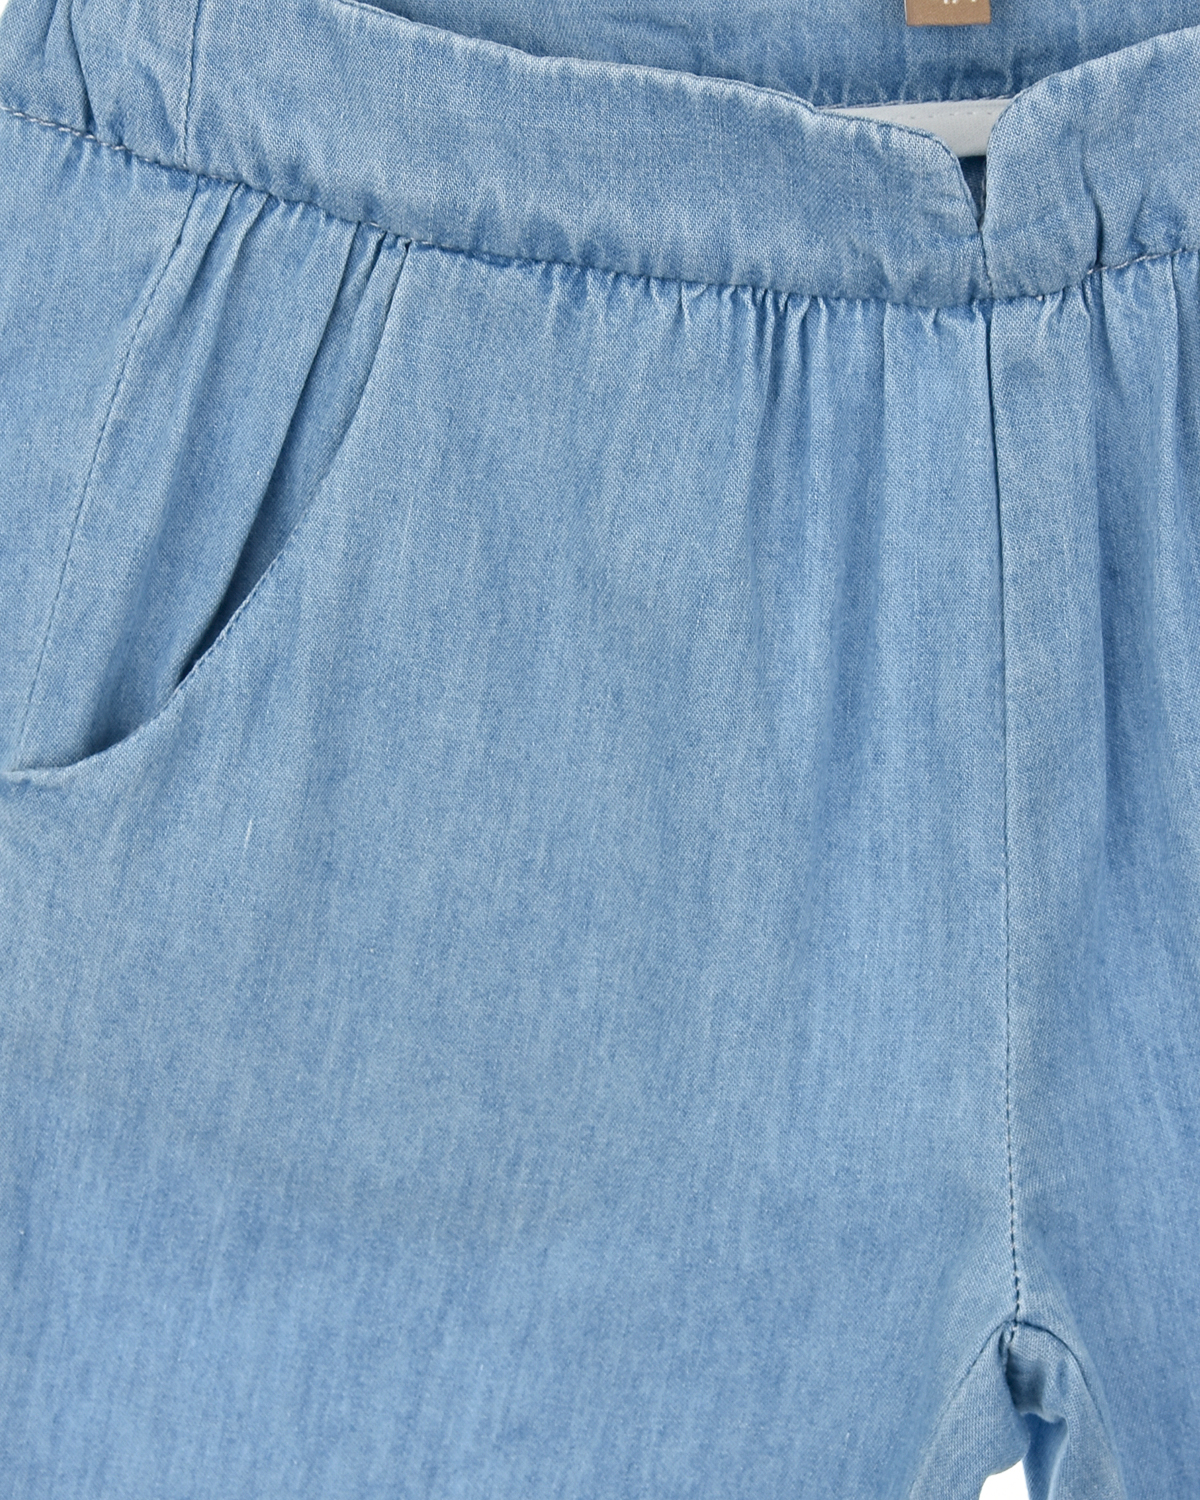 Джинсовые брюки с поясом на резинке Emile et Ida детские, размер 80, цвет голубой - фото 3